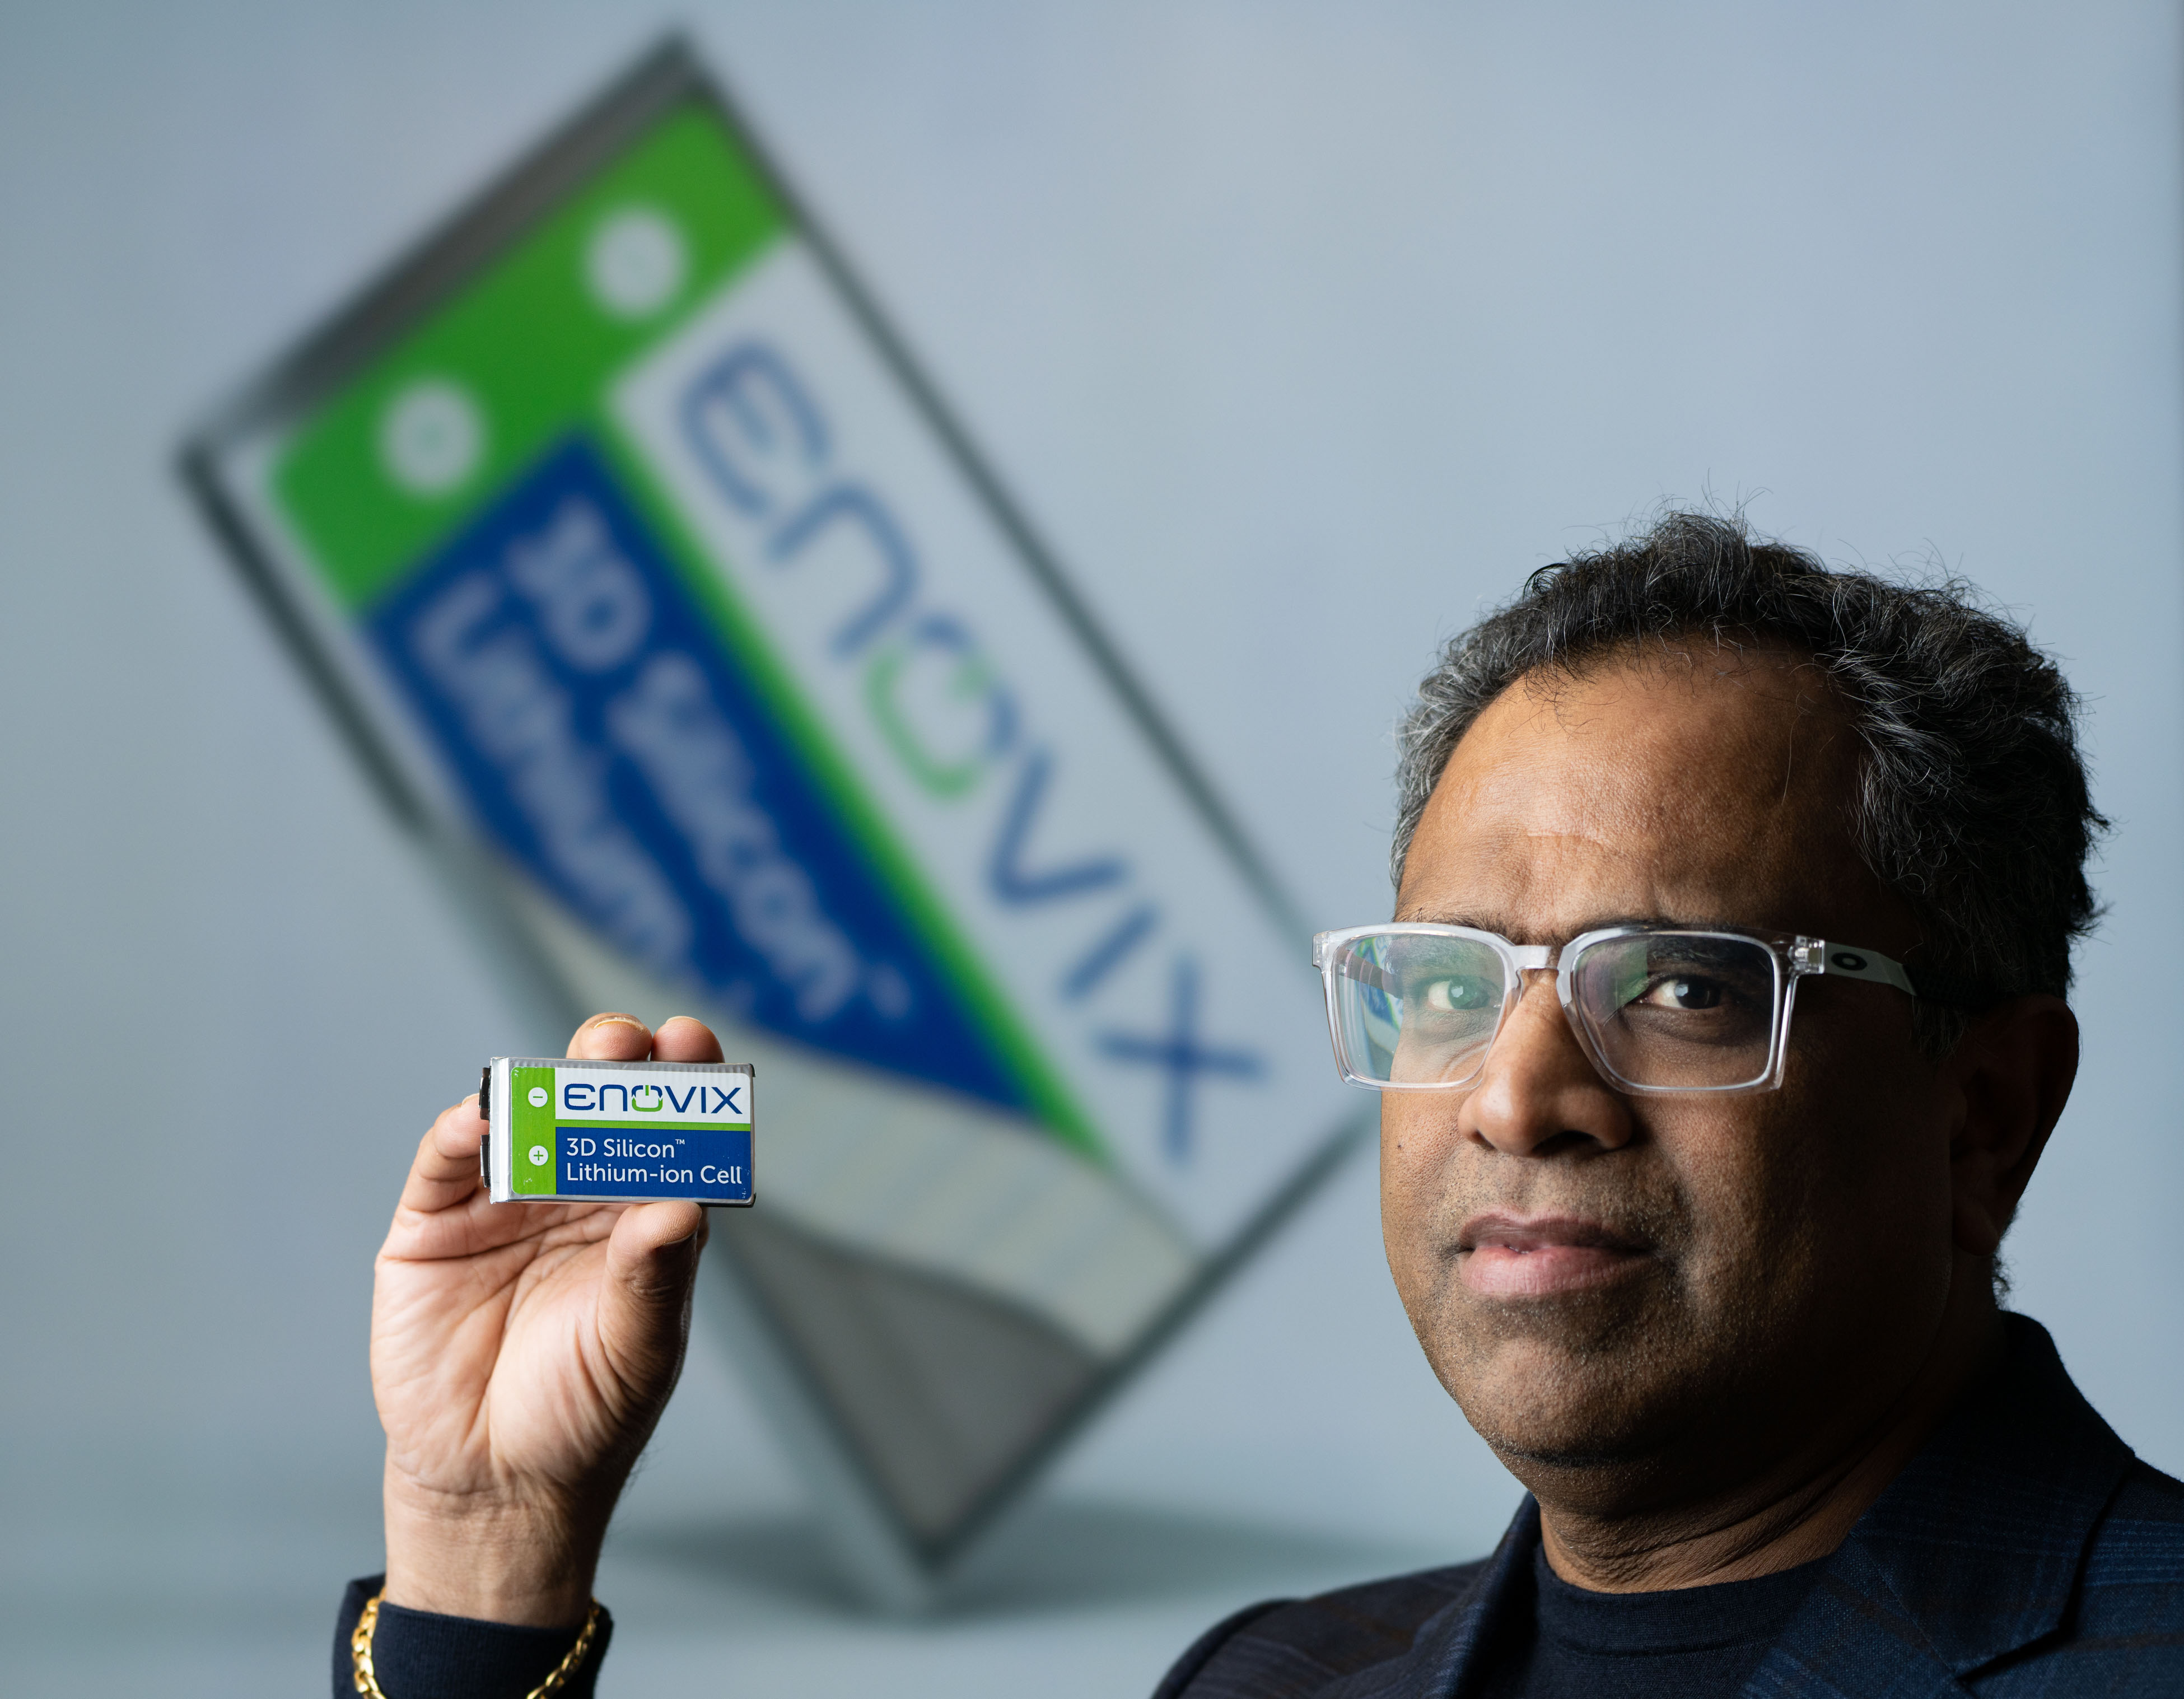 Enovix CEO Dr. Raj Talluri